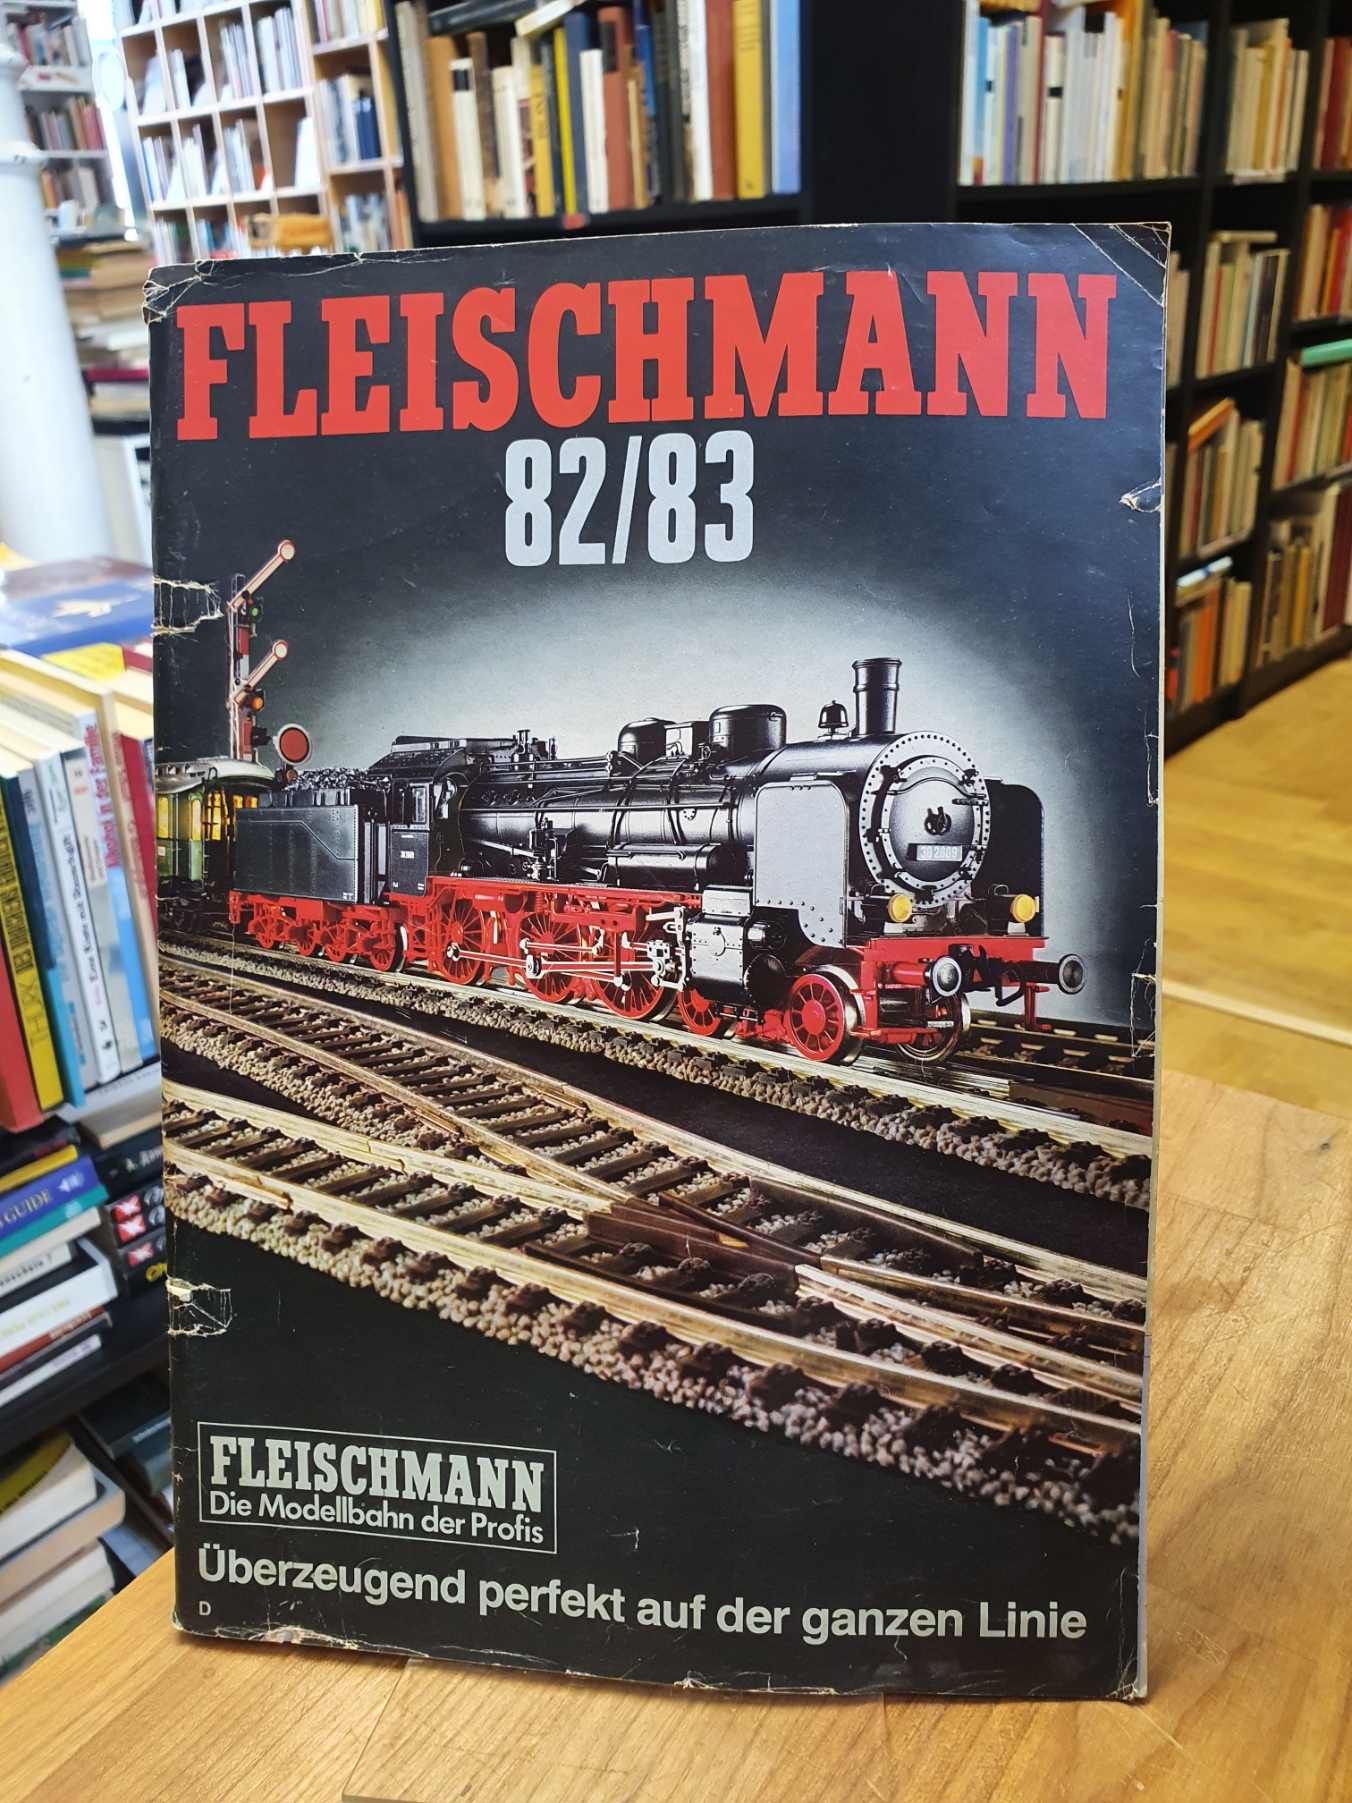 ohne Autor, Fleischmann 82/83 – Modellbahnen Gesamt-Katalog